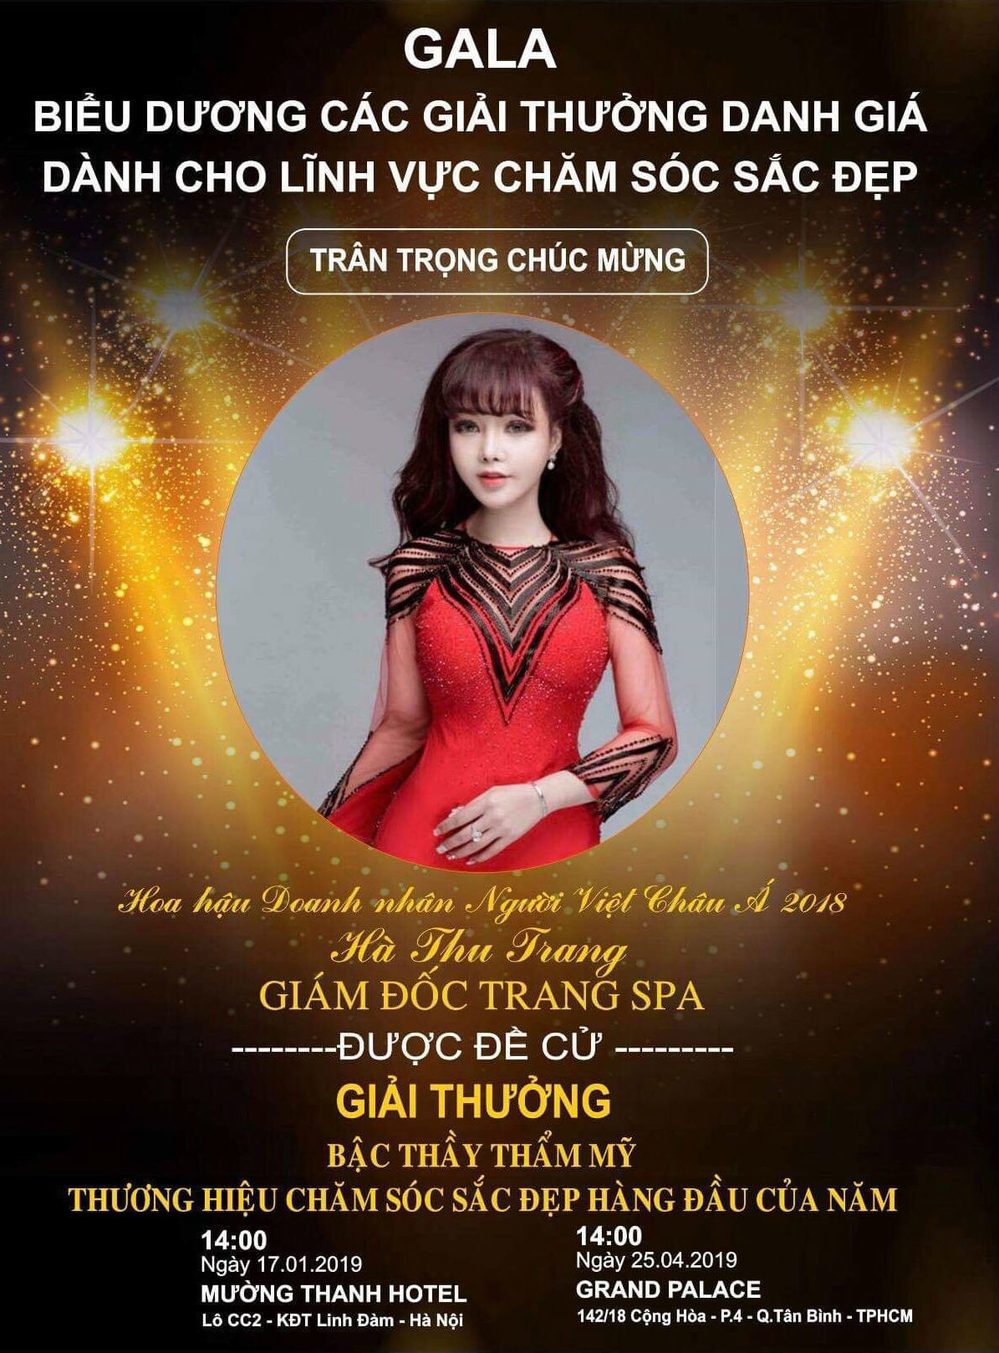 Hoa hậu Hà Thu Trang và hành trình thầm lặng nối dài yêu thương